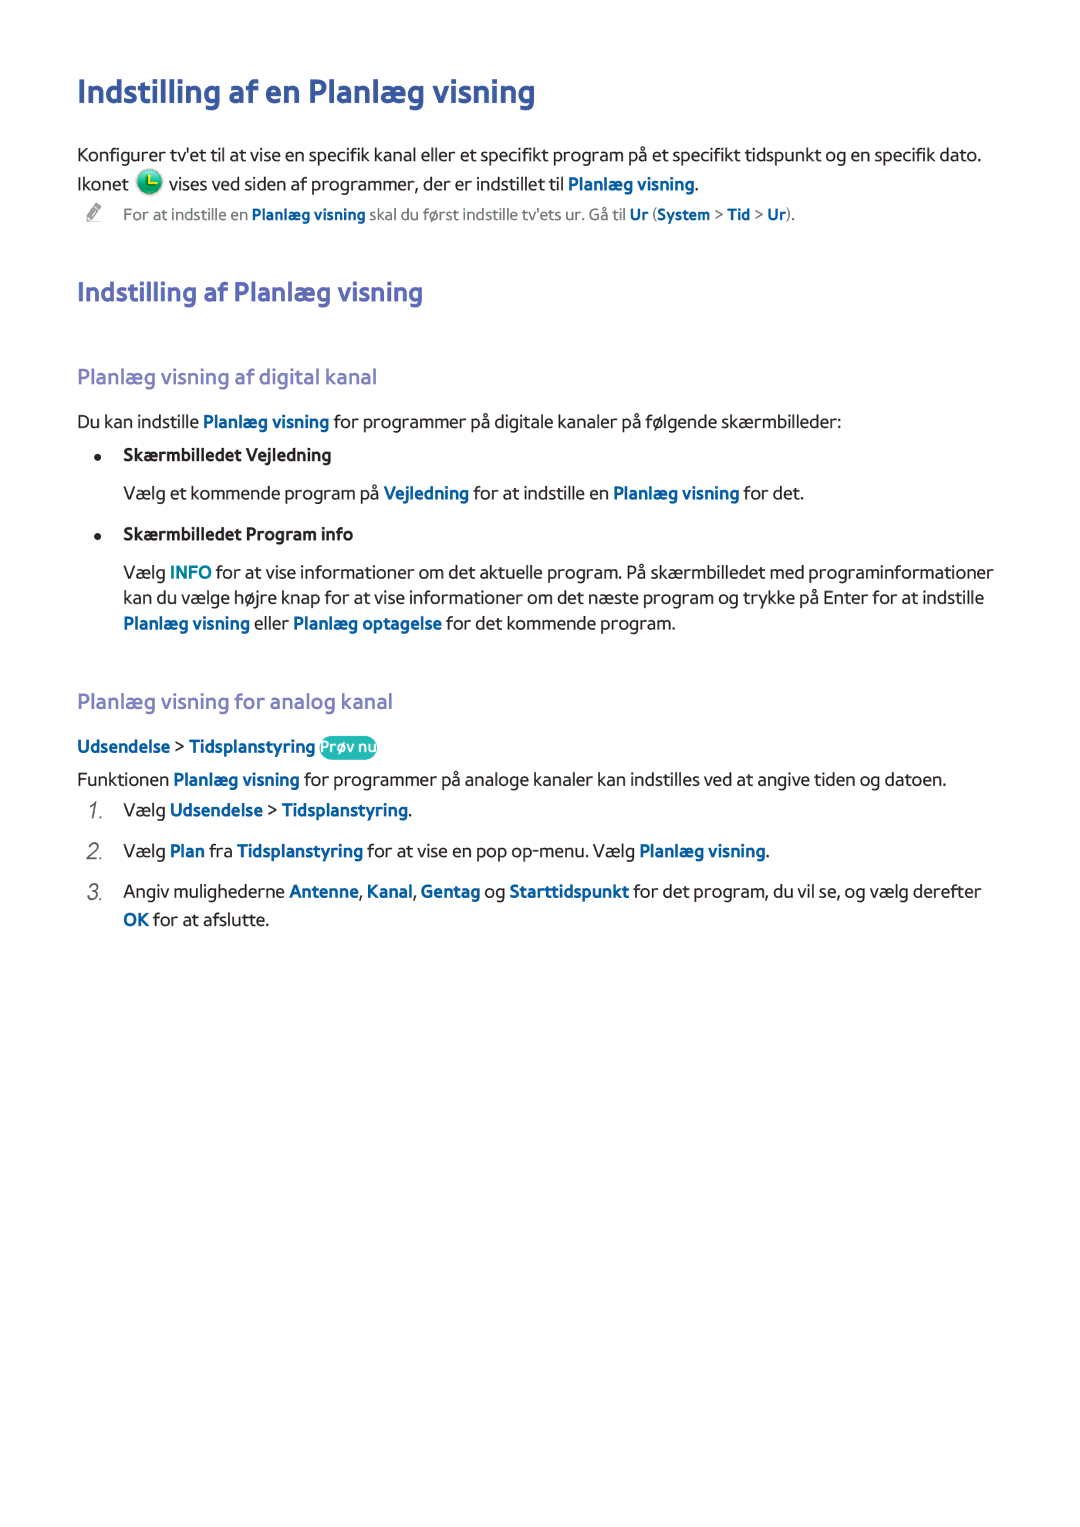 Samsung UE65HU7105UXXE Indstilling af en Planlæg visning, Indstilling af Planlæg visning, Planlæg visning af digital kanal 